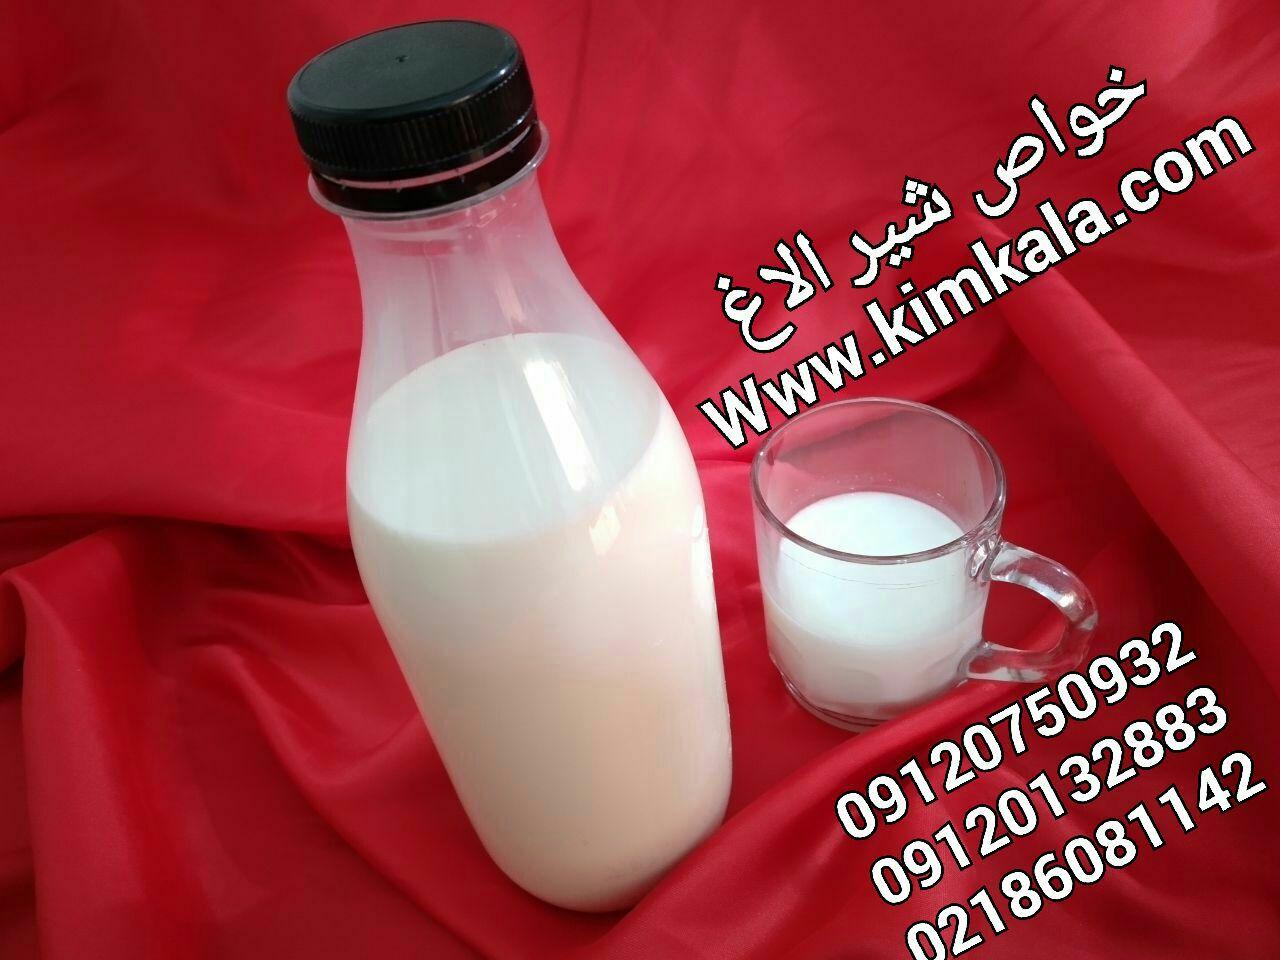 شیر الاغ | 09120750932 | قیمت شیر الاغ تازه 